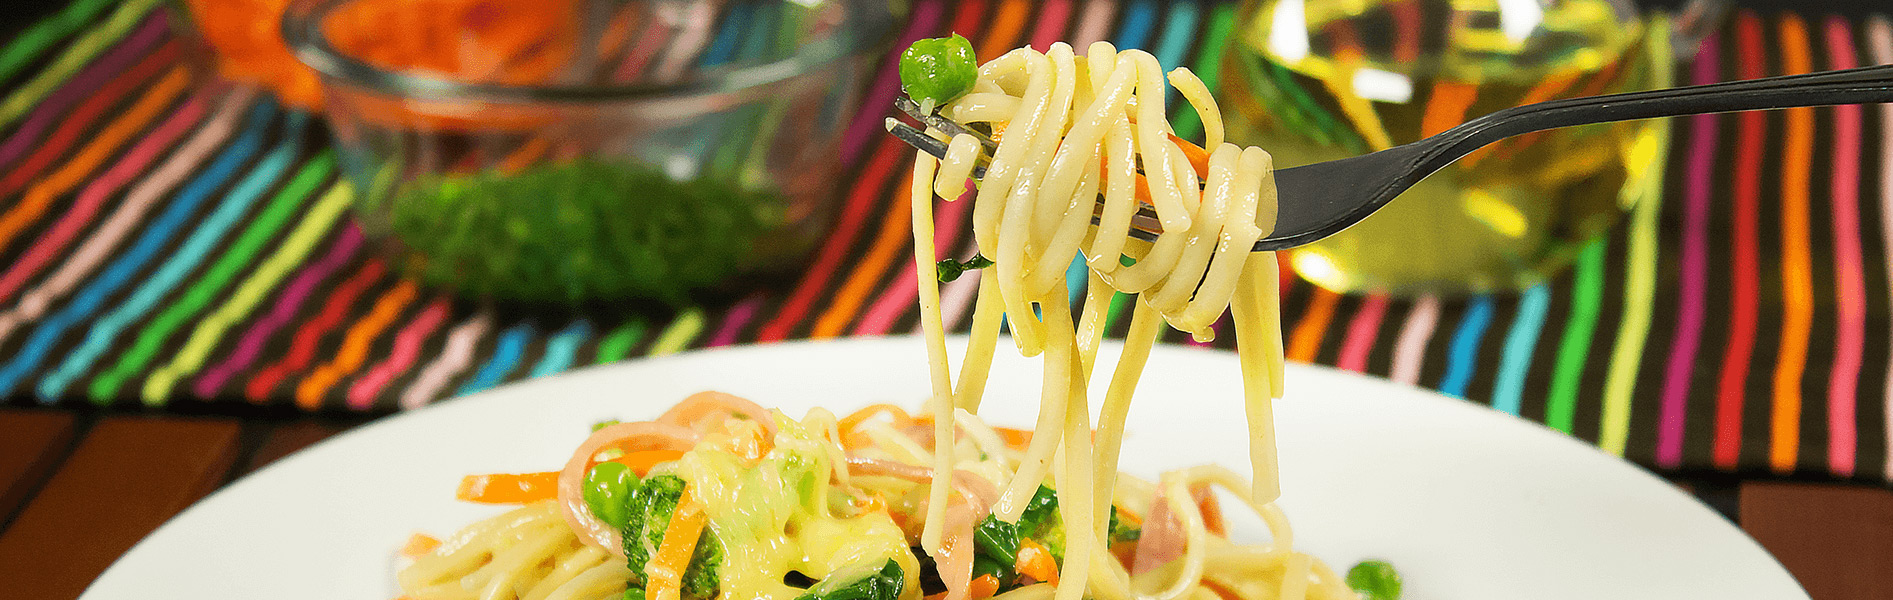 Spaghetti Doria a la primavera con jamón